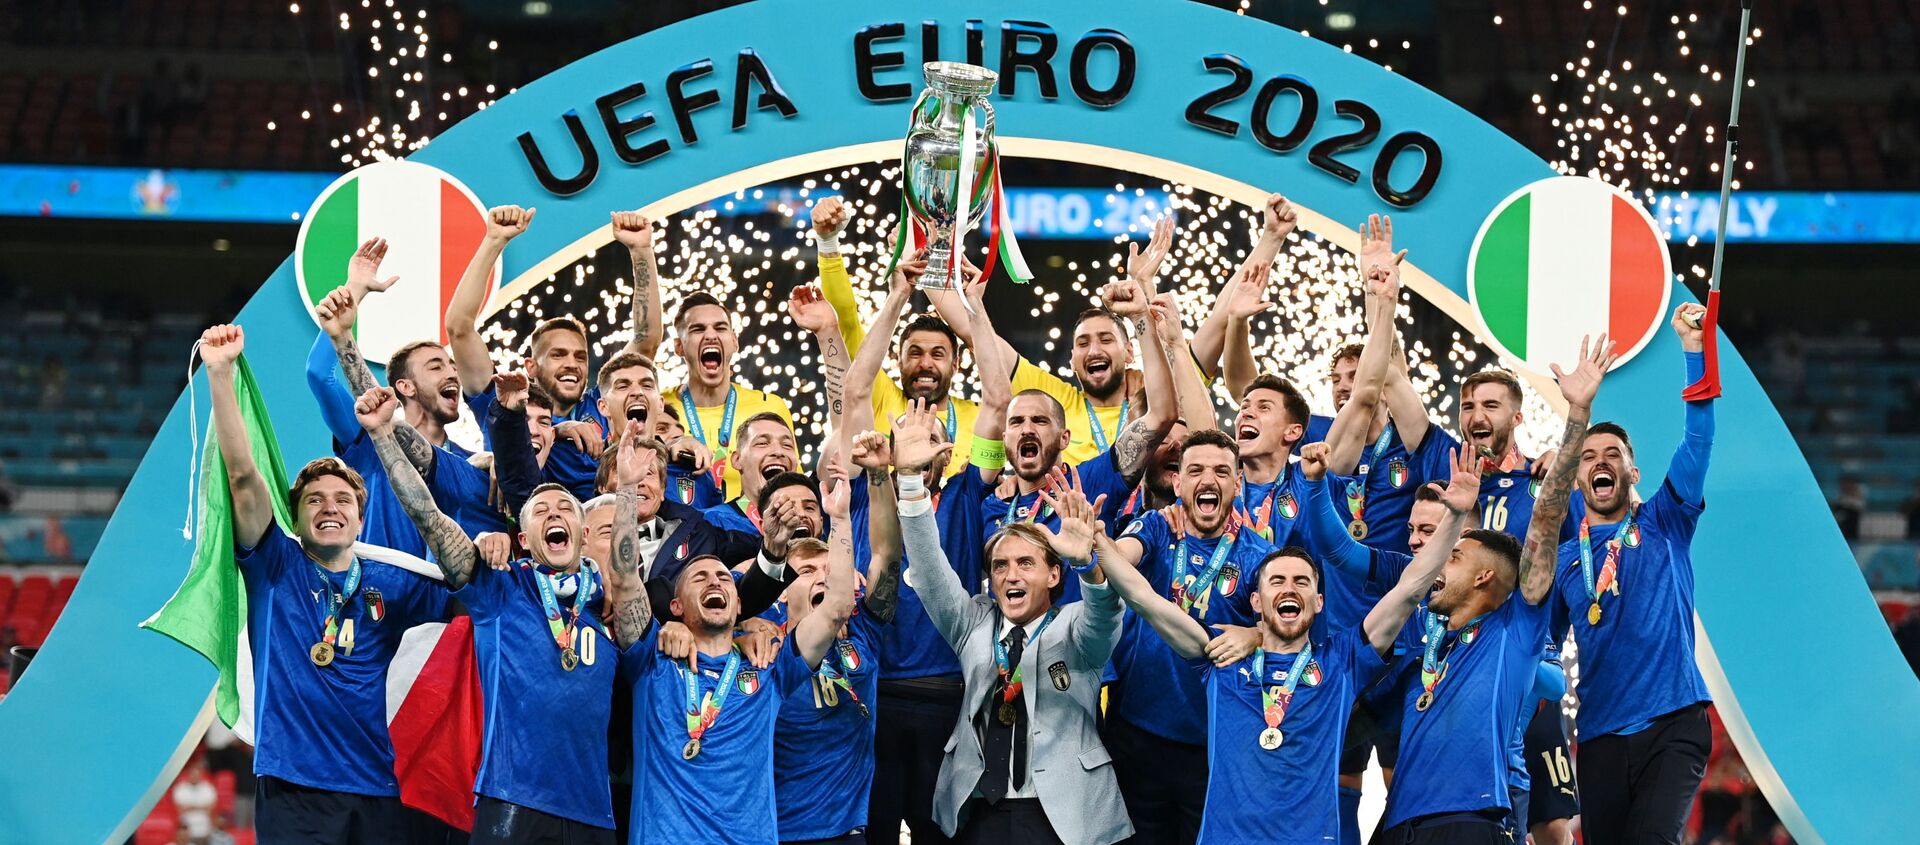 2020 Avrupa Futbol Şampiyonası'nın (EURO 2020) normal süresi ve uzatmaları 1-1 tamamlanan final maçında İngiltere'ye penaltılarda 3-2 üstünlük sağlayan İtalya, kupanın sahibi oldu. - Sputnik Türkiye, 1920, 11.07.2021